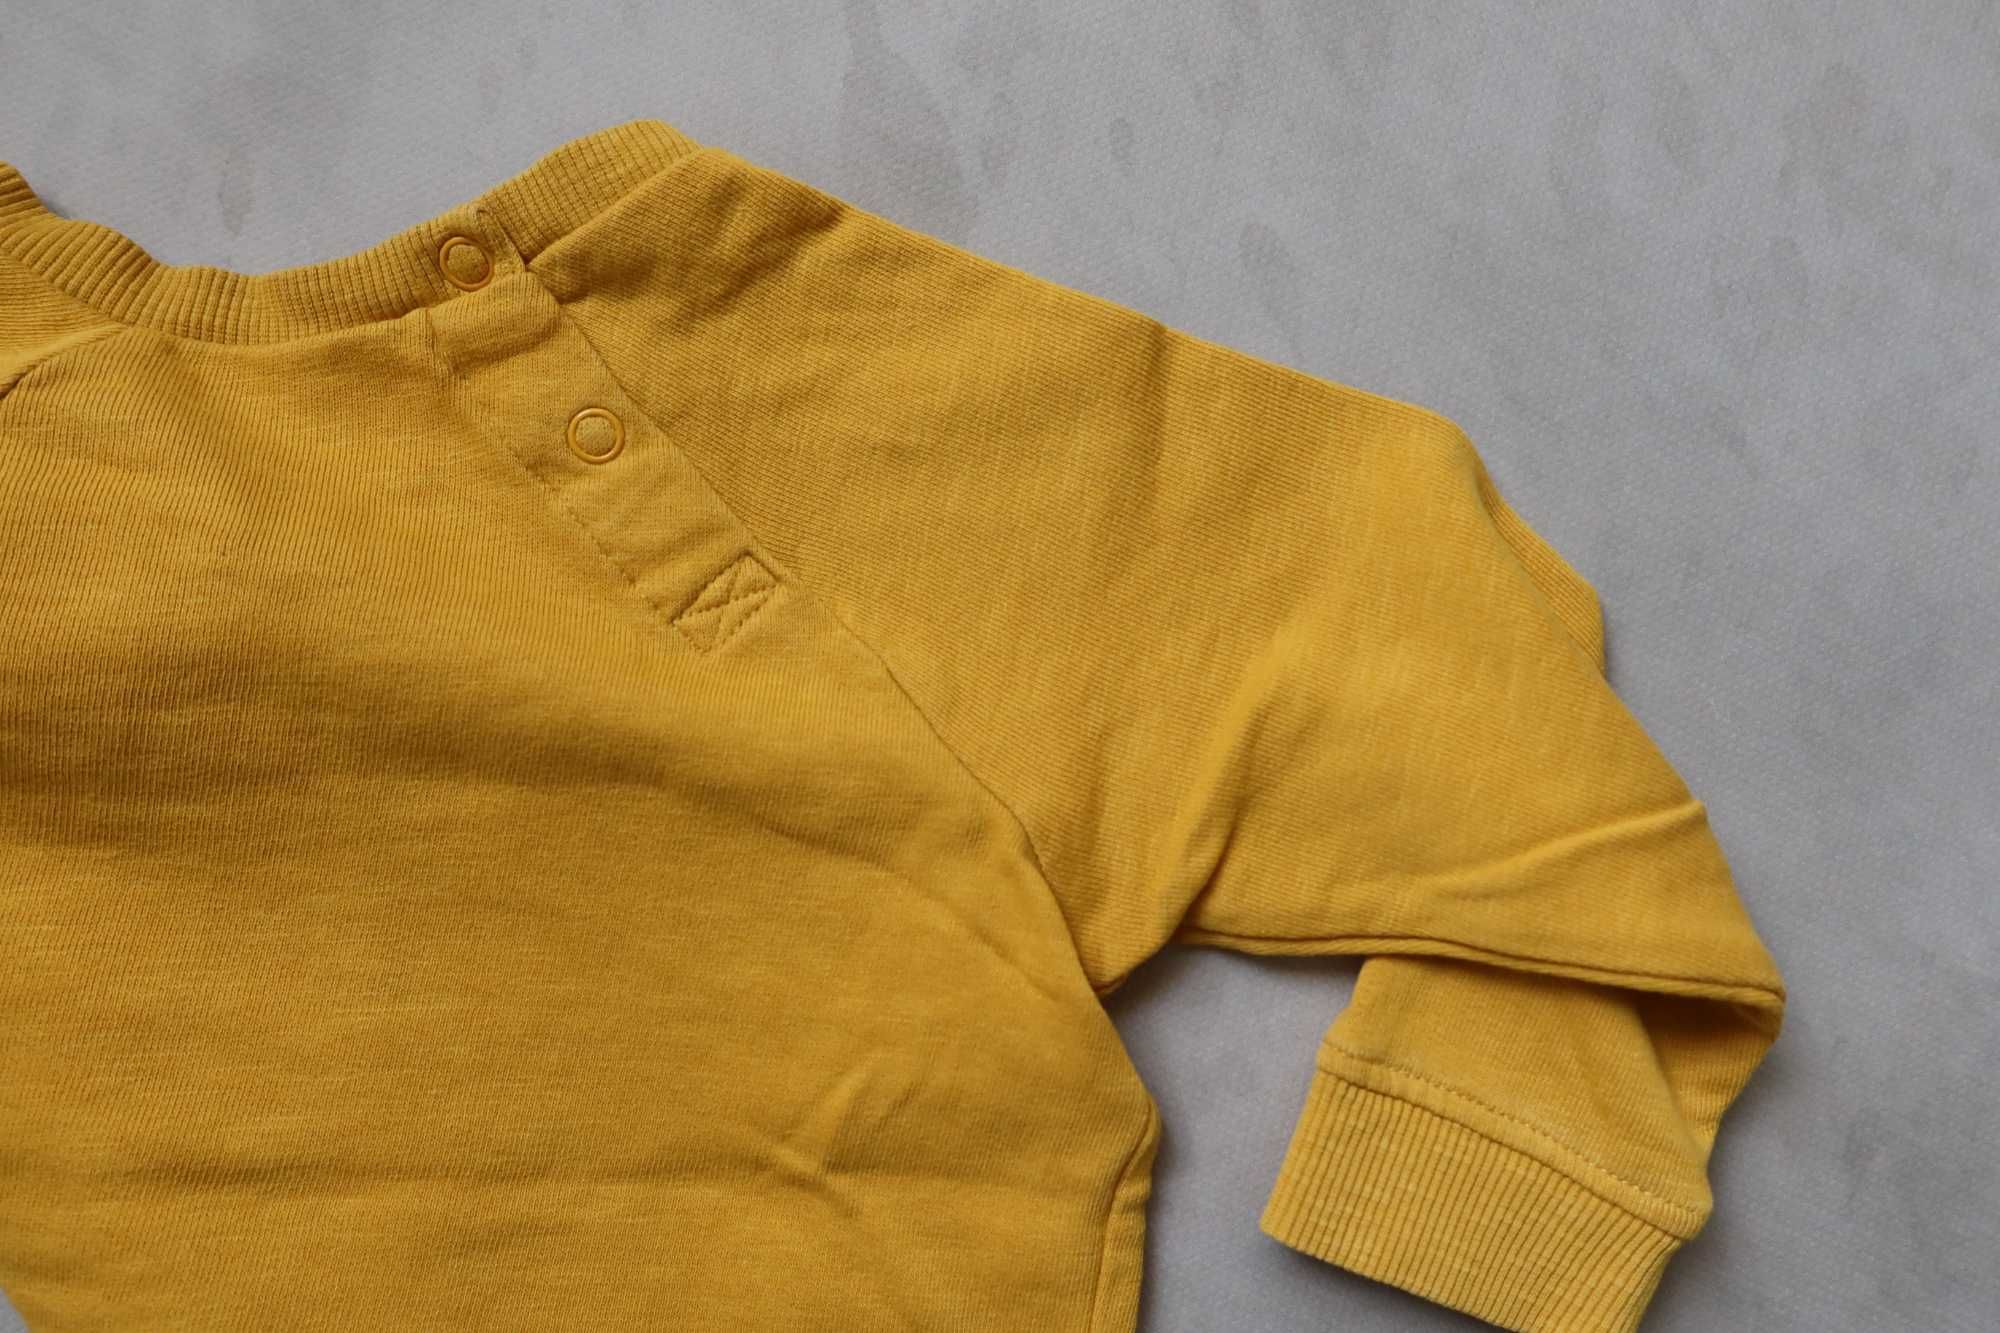 Bluza 86 HM musztardowa żółta styl vintage wygodna